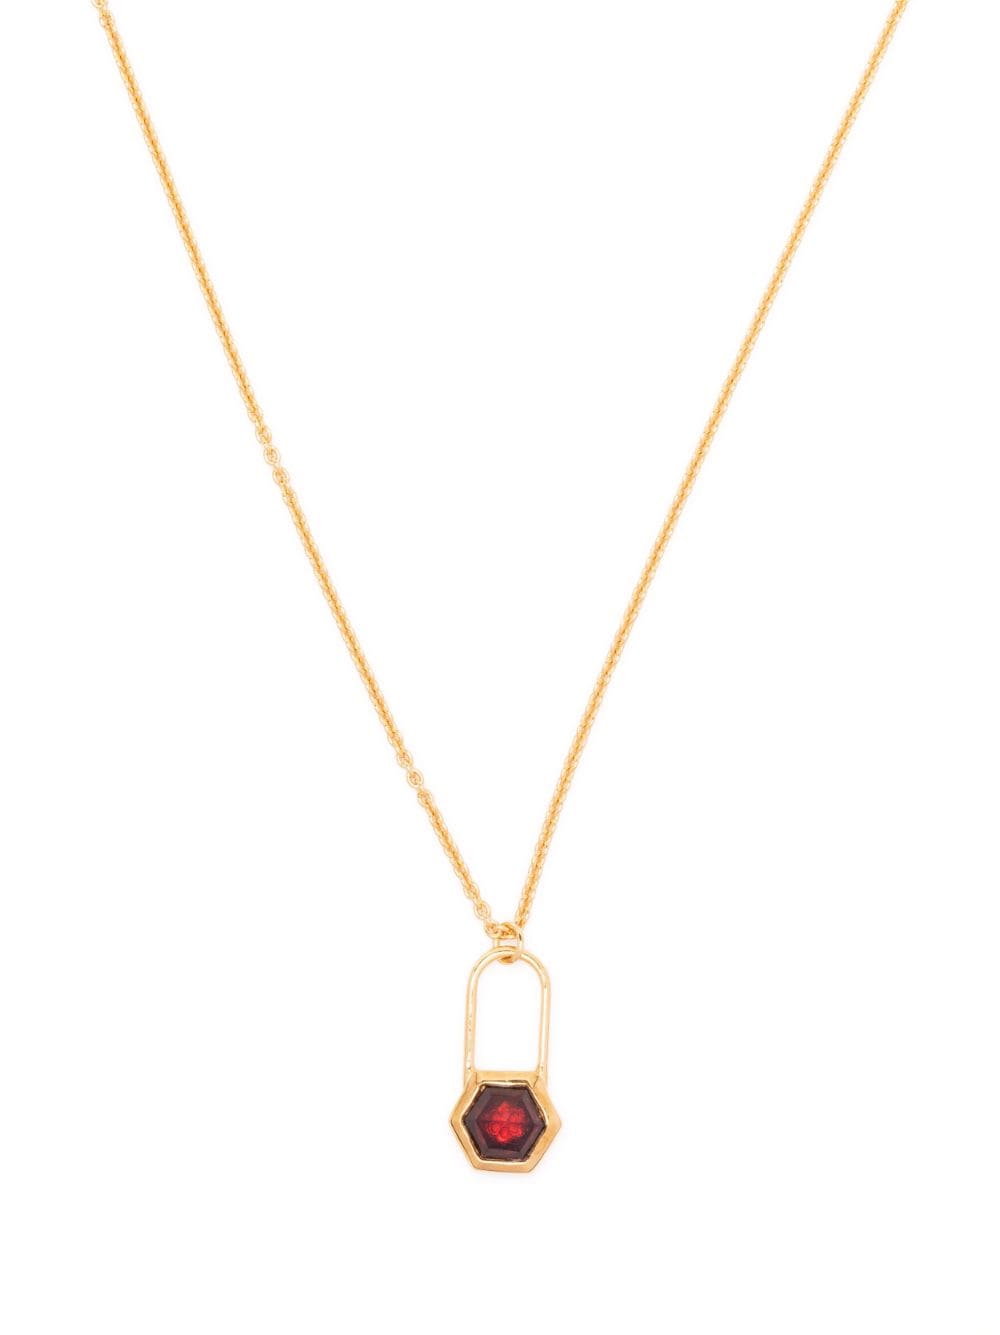 Rachel Jackson hexagonal-padlock Garnet necklace - Gold von Rachel Jackson